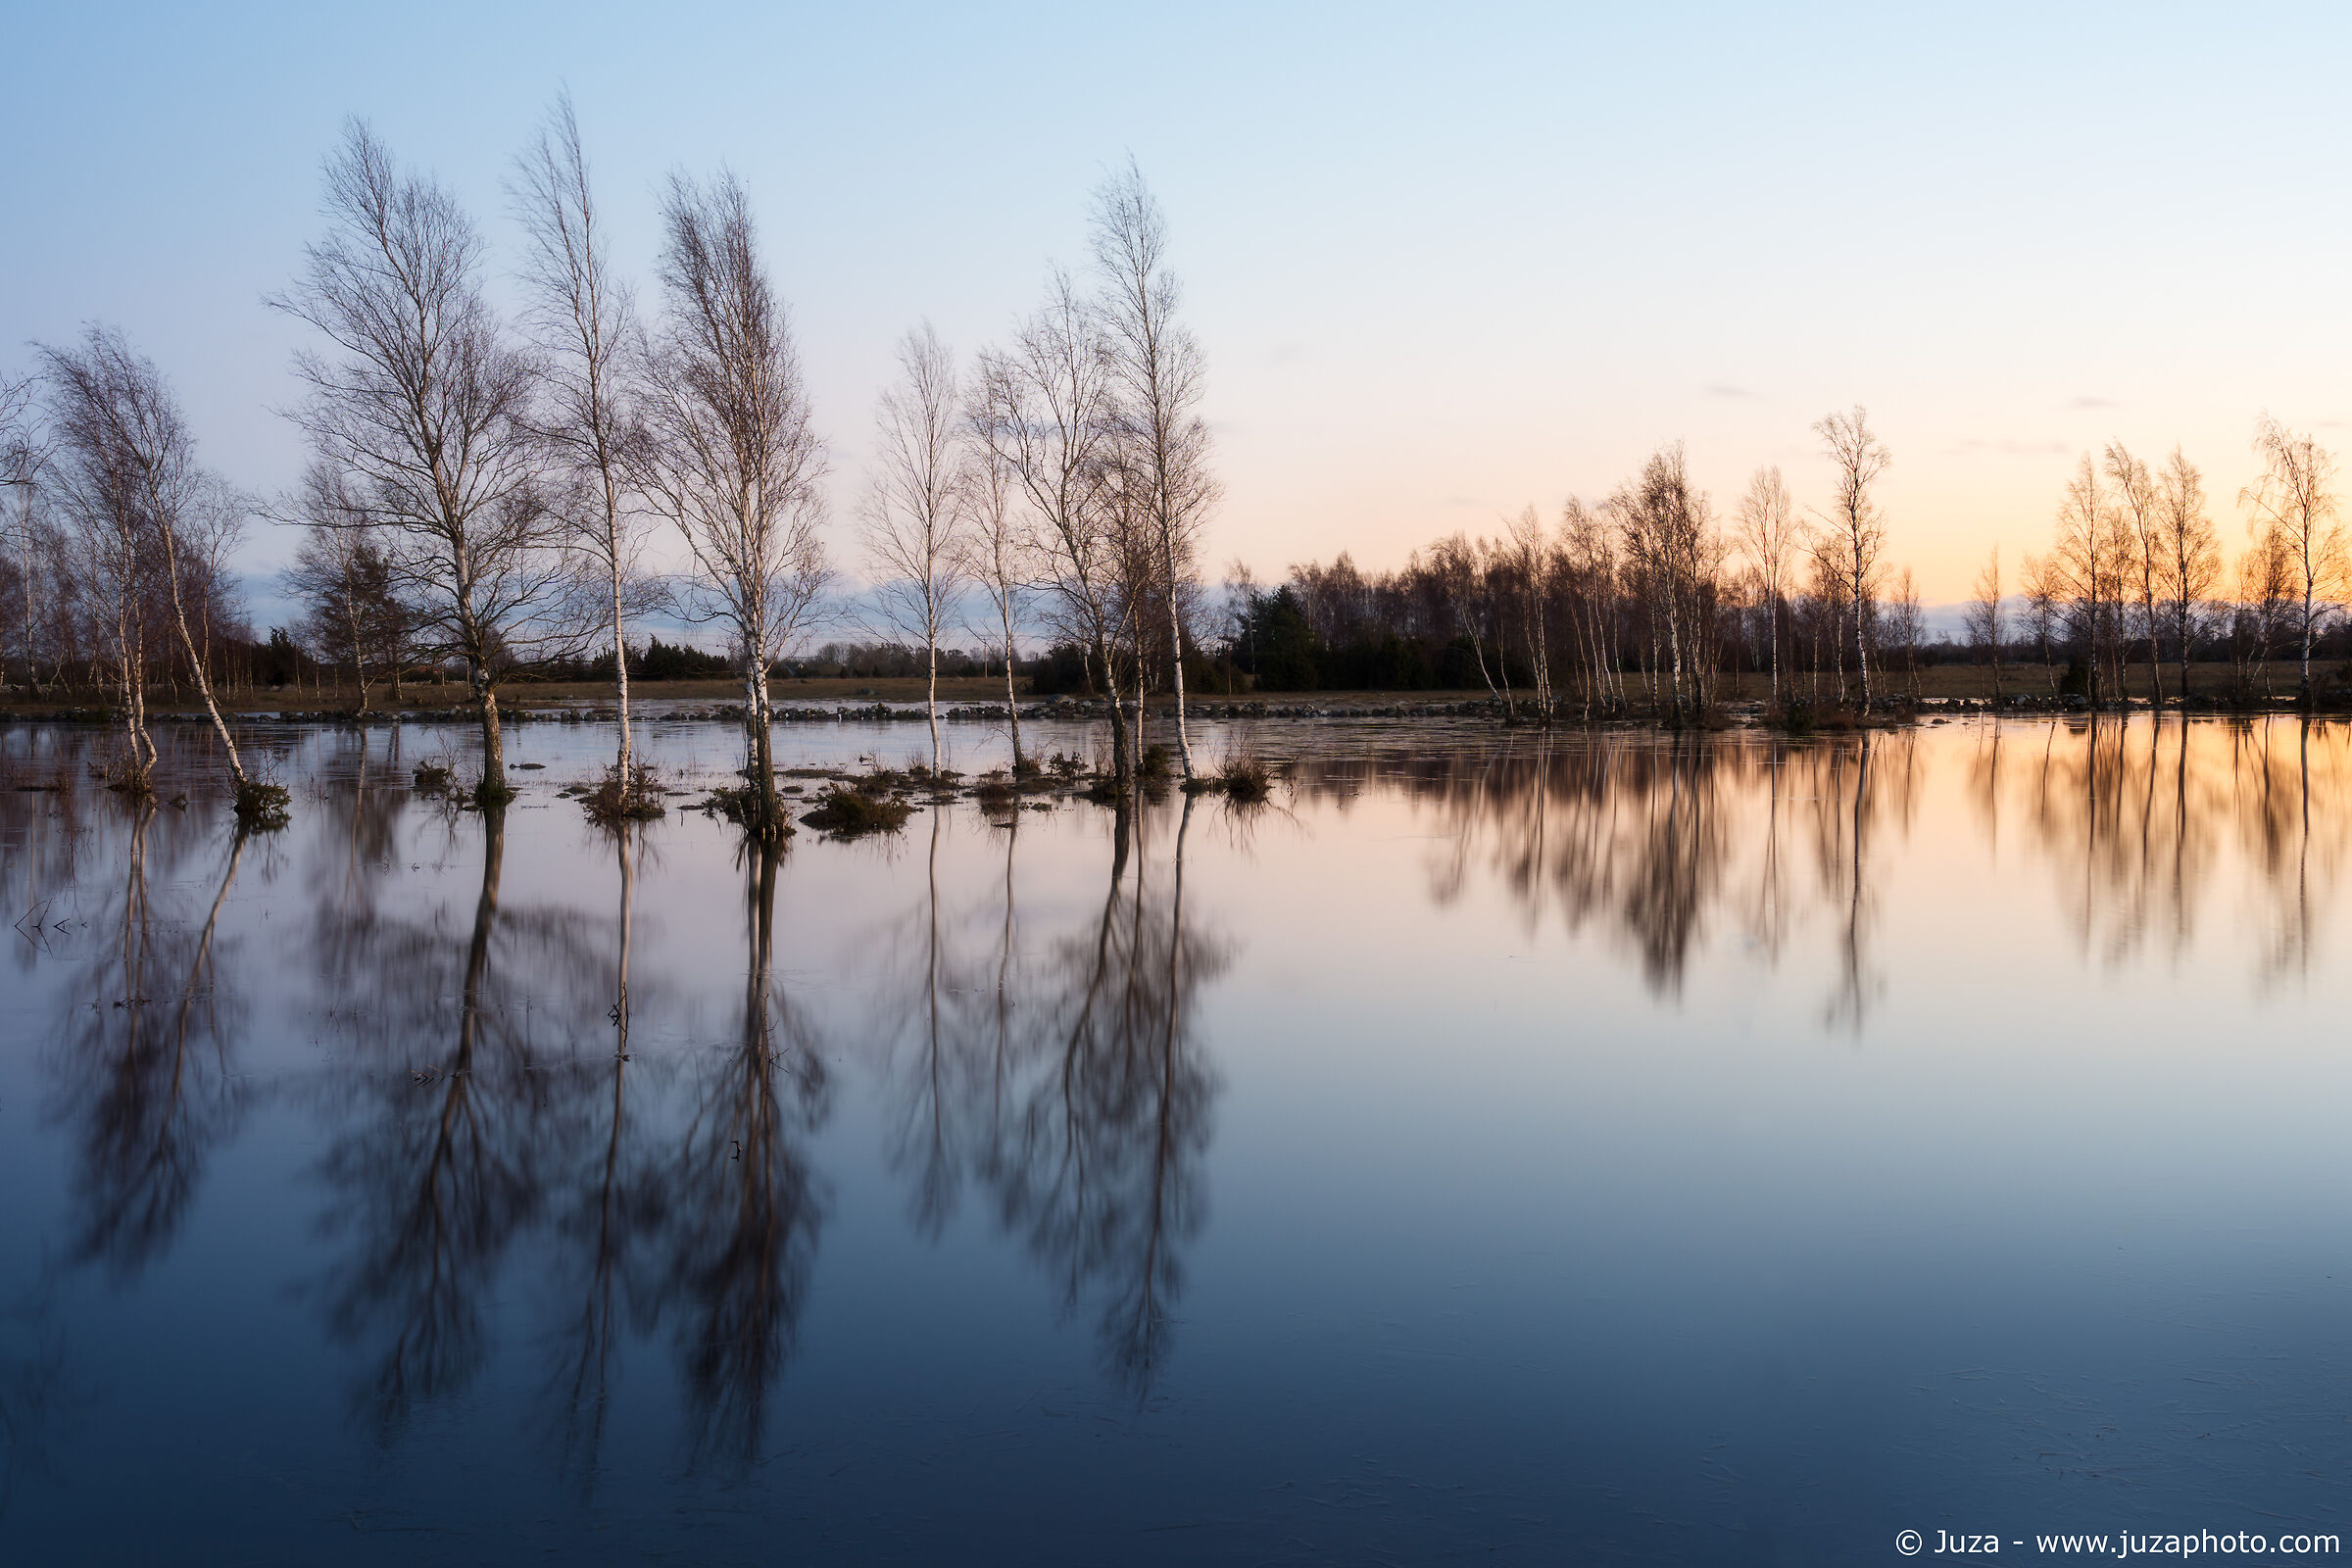 Bettule in flooded fields, Sweden...